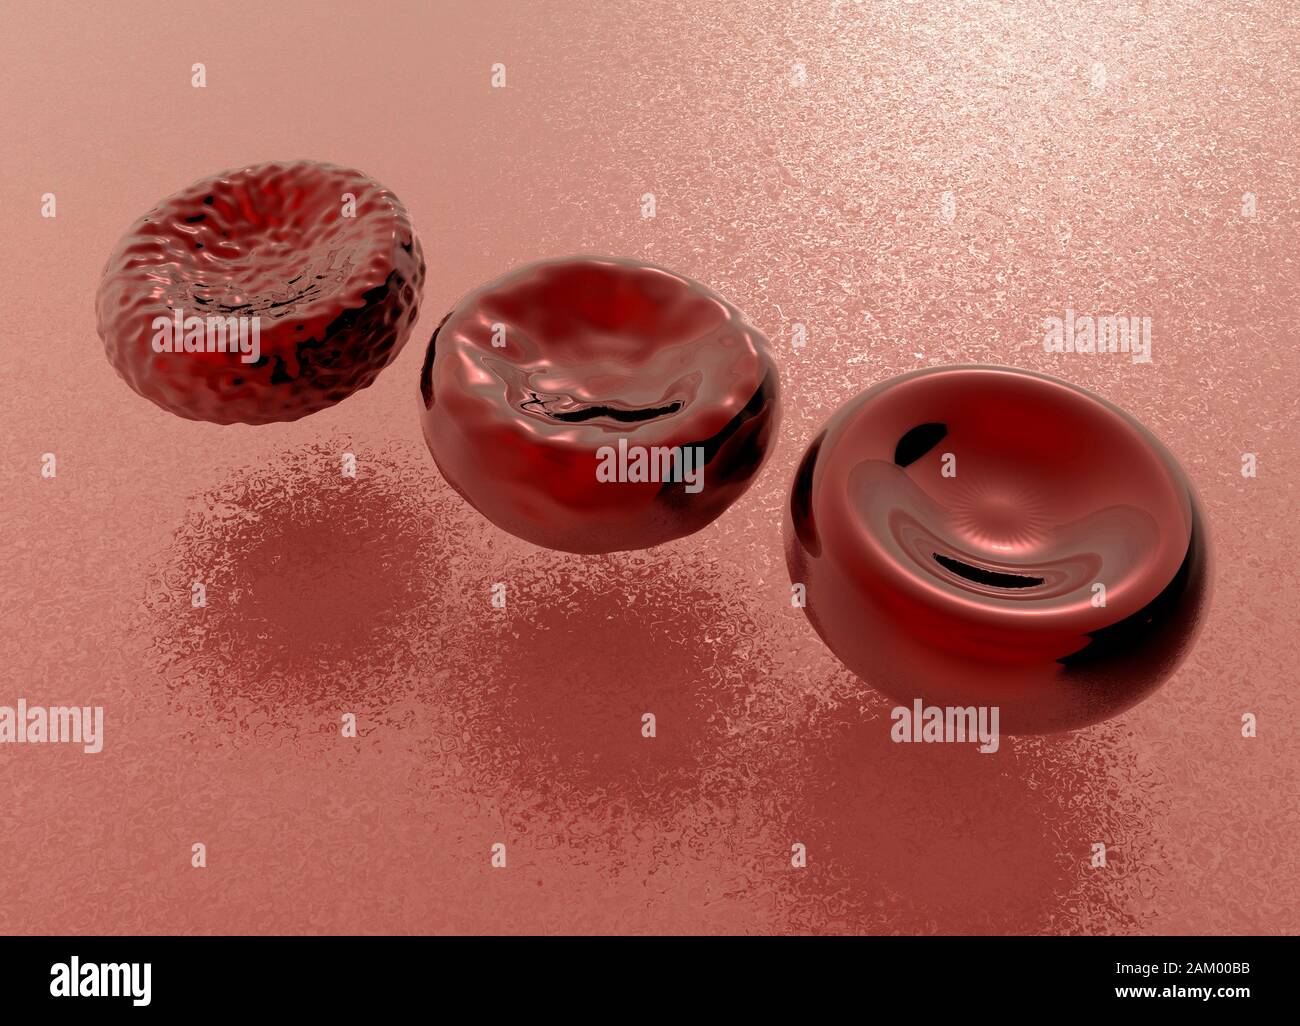 Globuli rossi morti, morenti e sani, illustrazione Foto Stock